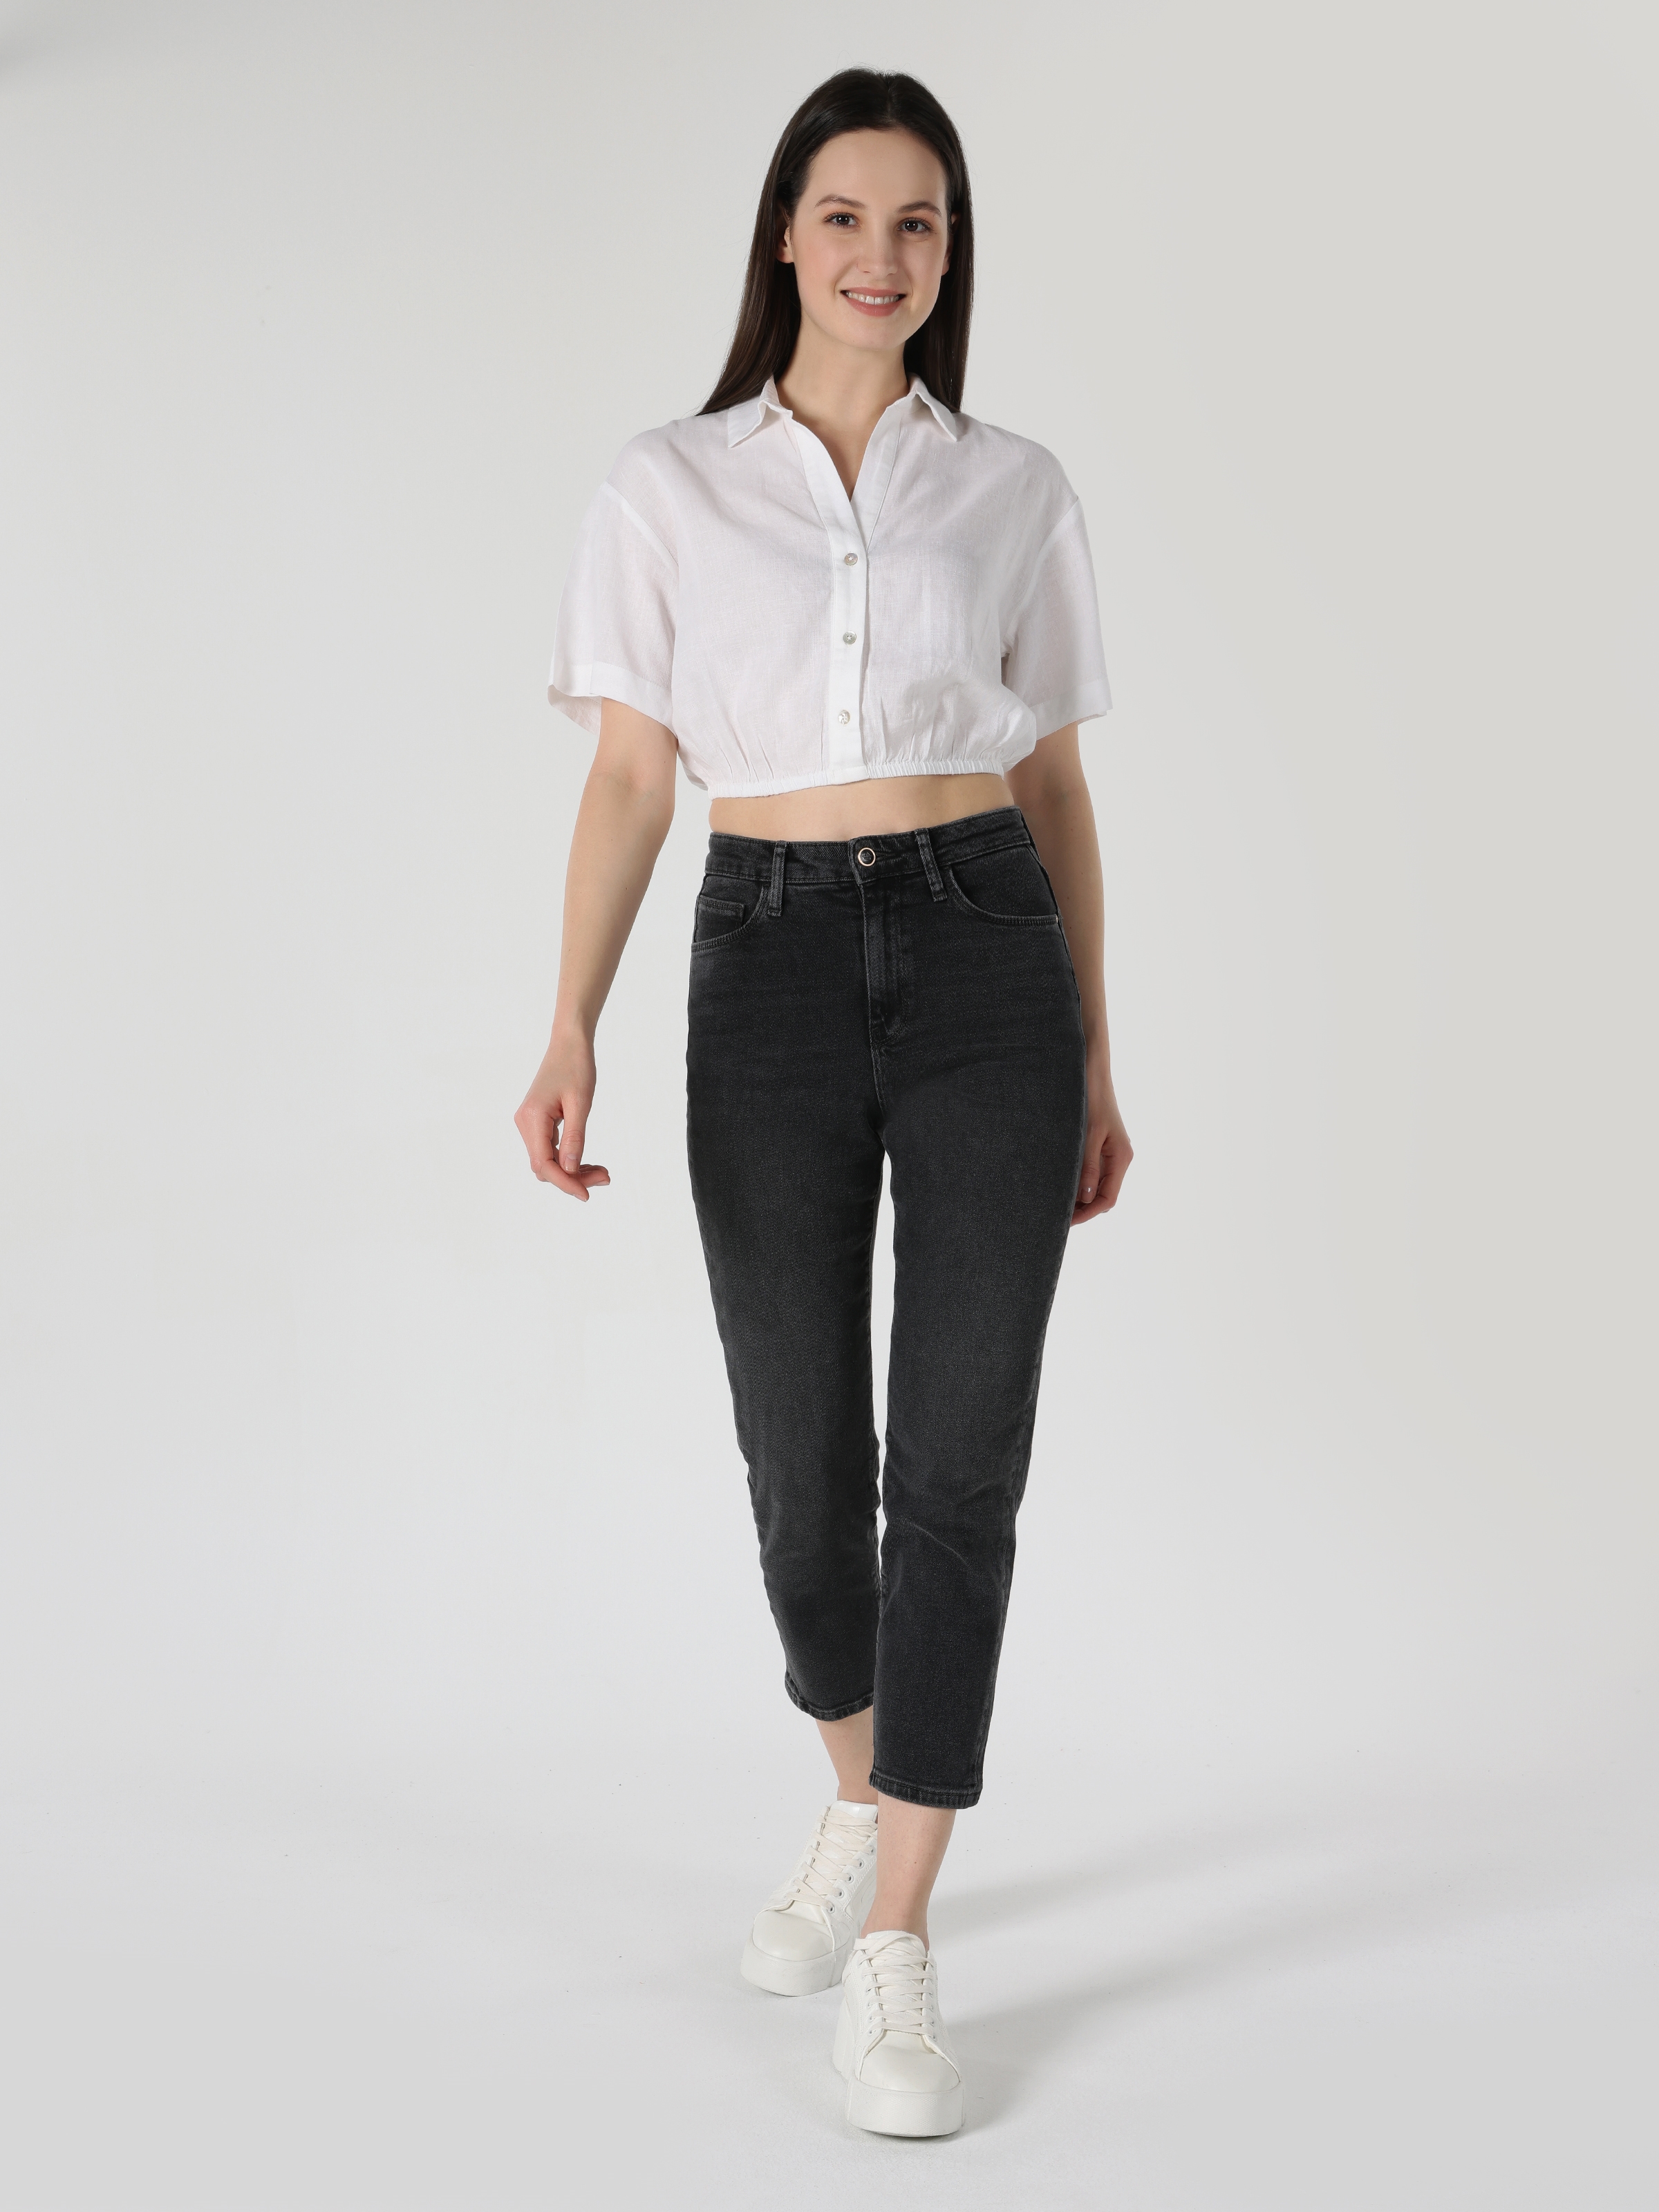 Regular Fit Shirt Neck Beyaz Kadın Kısa Kol Gömlek Cl1063853